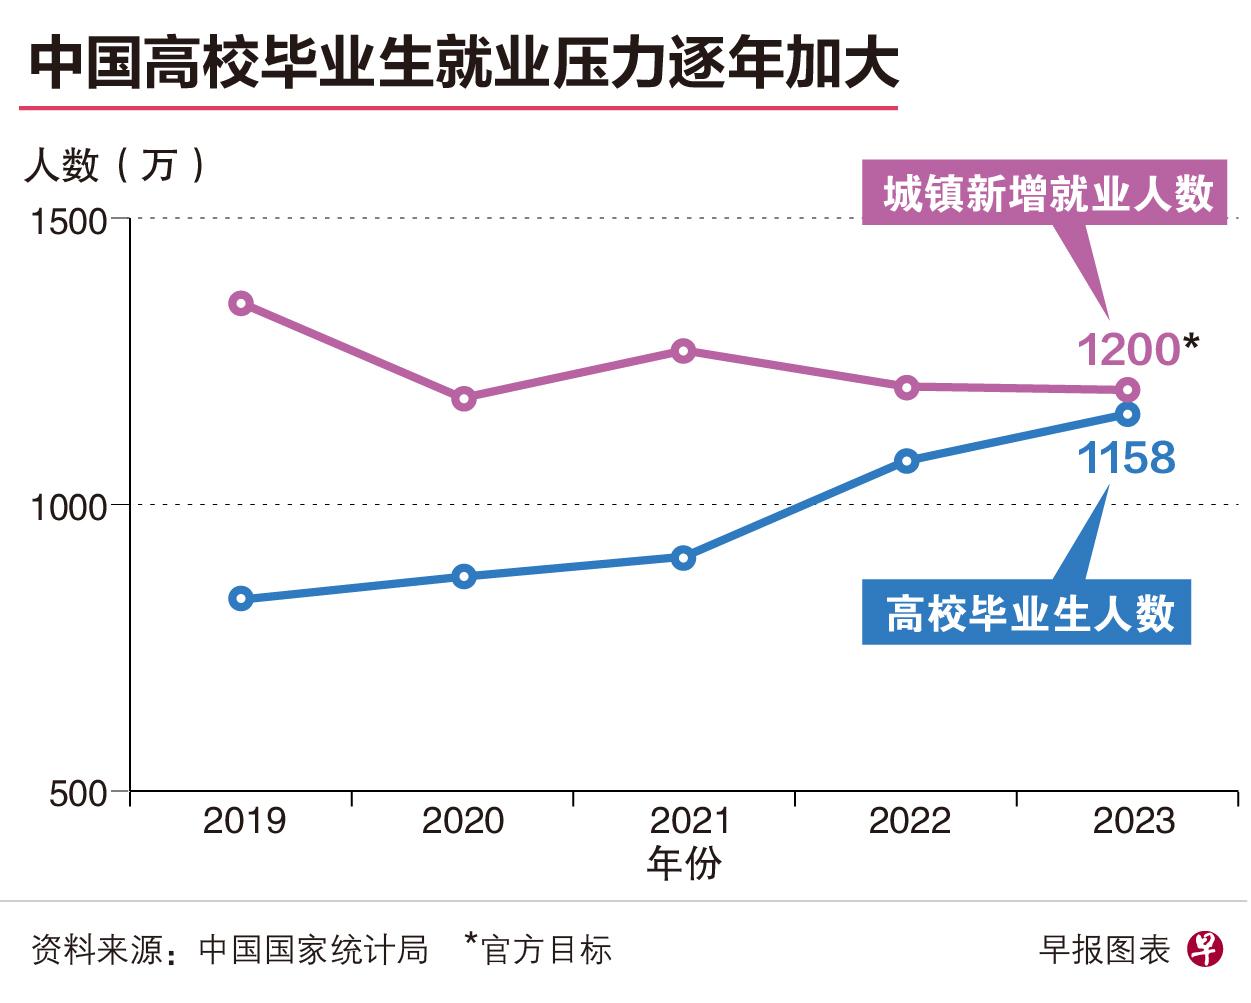 中国高校毕业生人数与城镇新增就业人数之间的差距逐年缩小